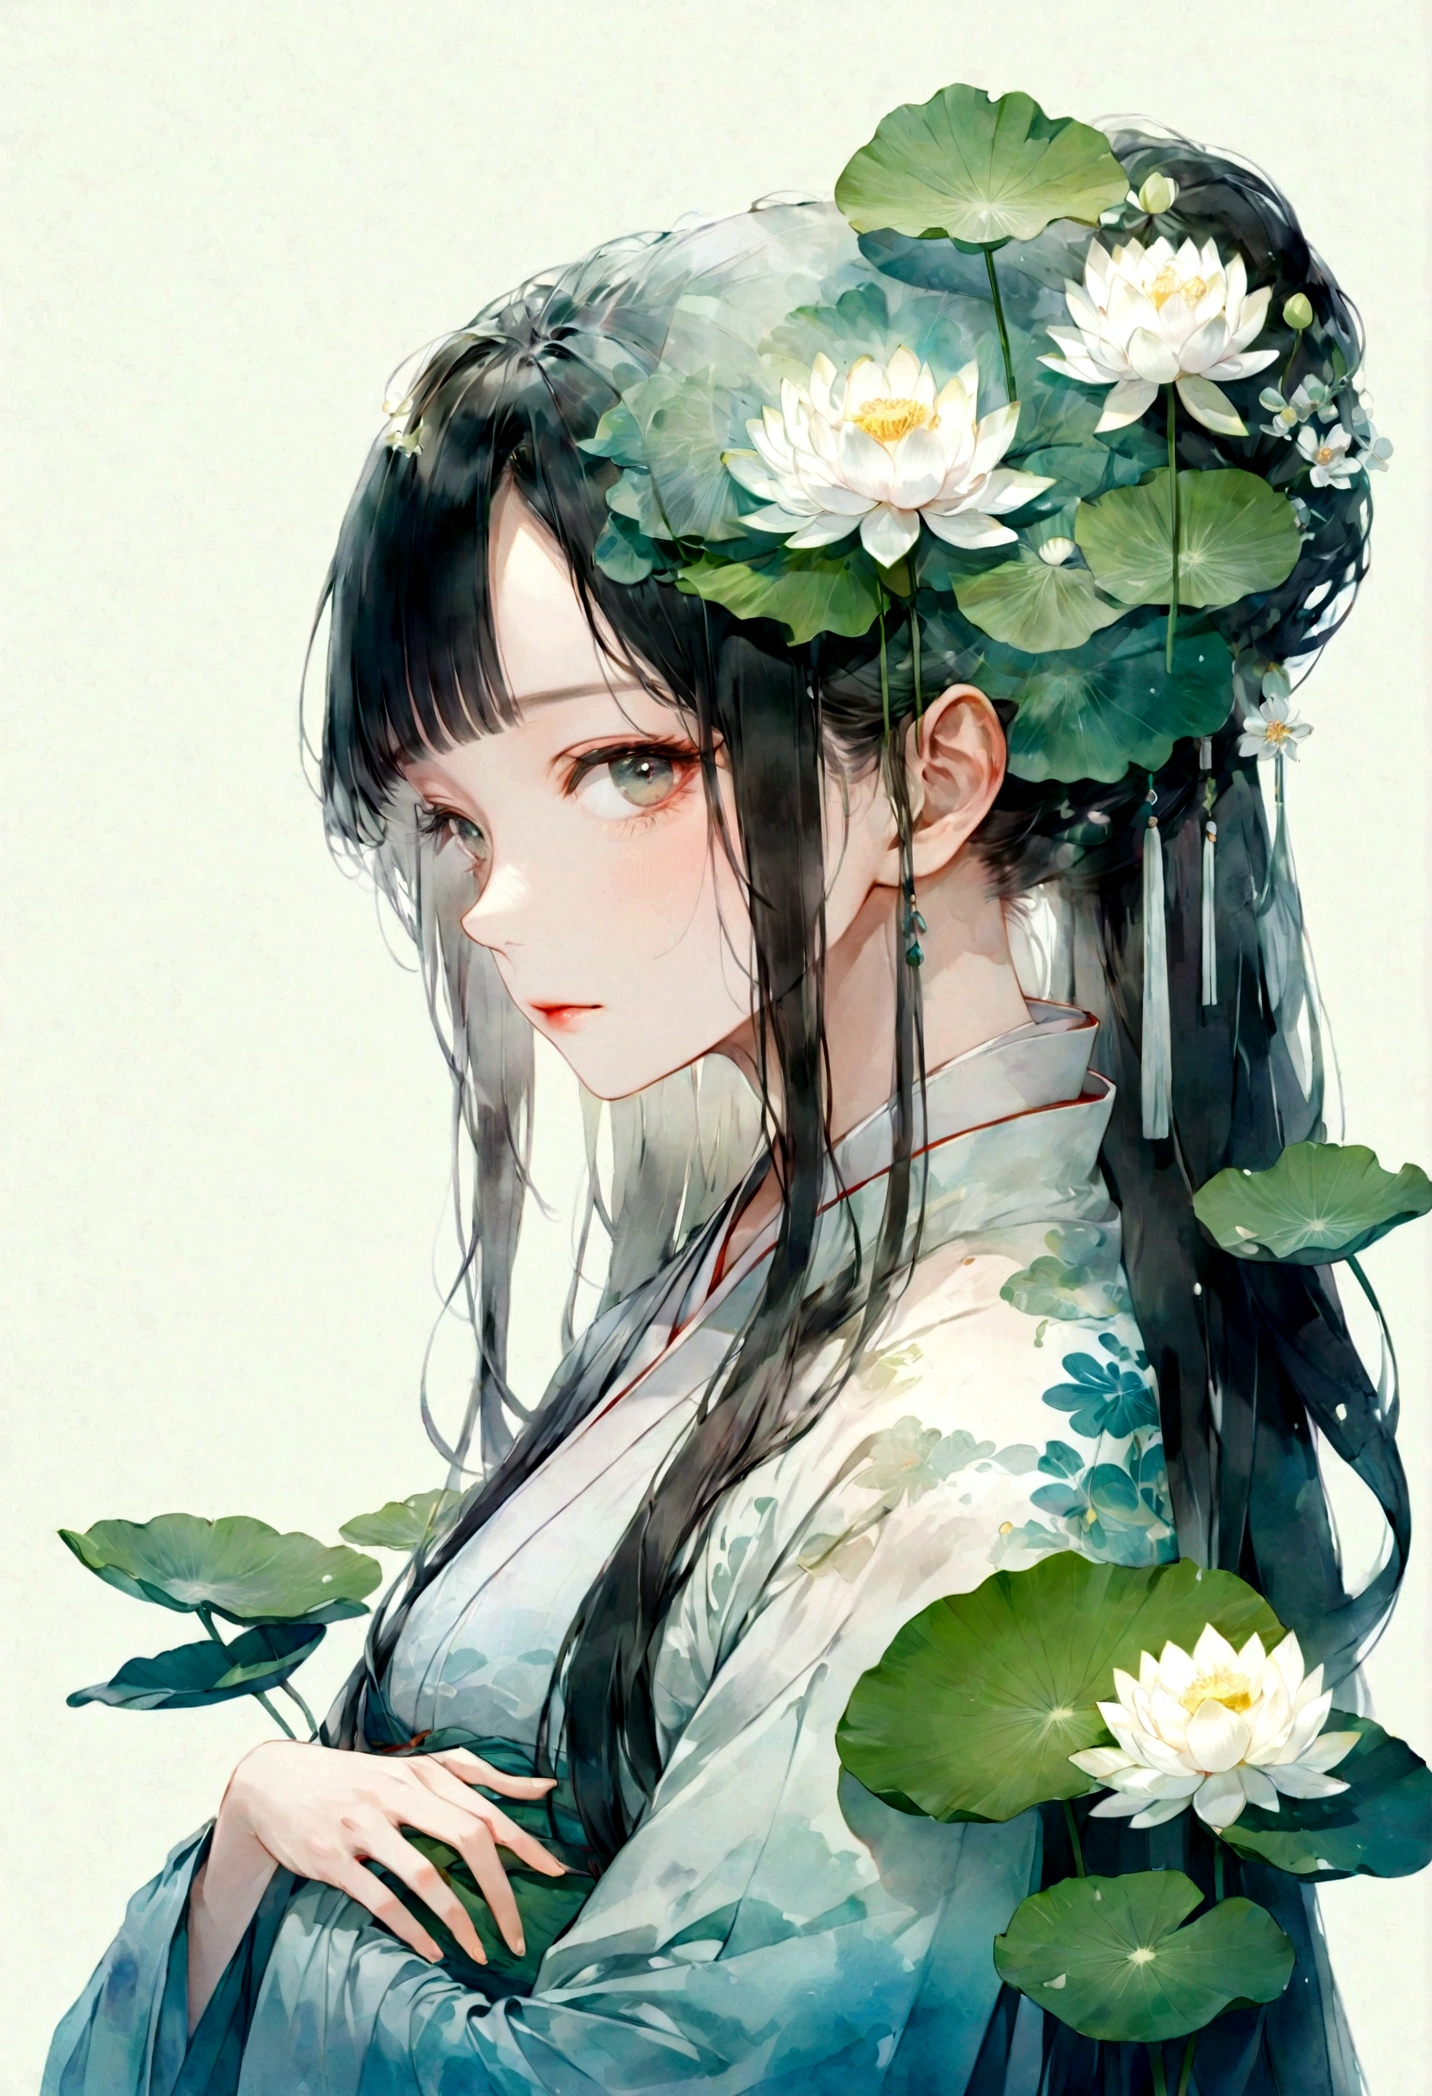    중국 한푸를 입은 긴 머리를 가진 아름답고 세밀한 소녀의 이중 노출 평면 벡터(얼굴이 맑음, 아름답고 완벽하다)영상 ( 완벽한 해부학적 구조 ) ，배경은 반투명하고 큰 흰색 연꽃과 큰 연잎이 완벽합니다., 아름답게, 복잡한 일러스트레이션,   꿈꾸는듯한 천상의 예술 작품 개념 예술 작품 걸작, 최고의 품질, 매우 상세한, 고품질의 세심한 수채화 스타일 플랫 벡터 

                          